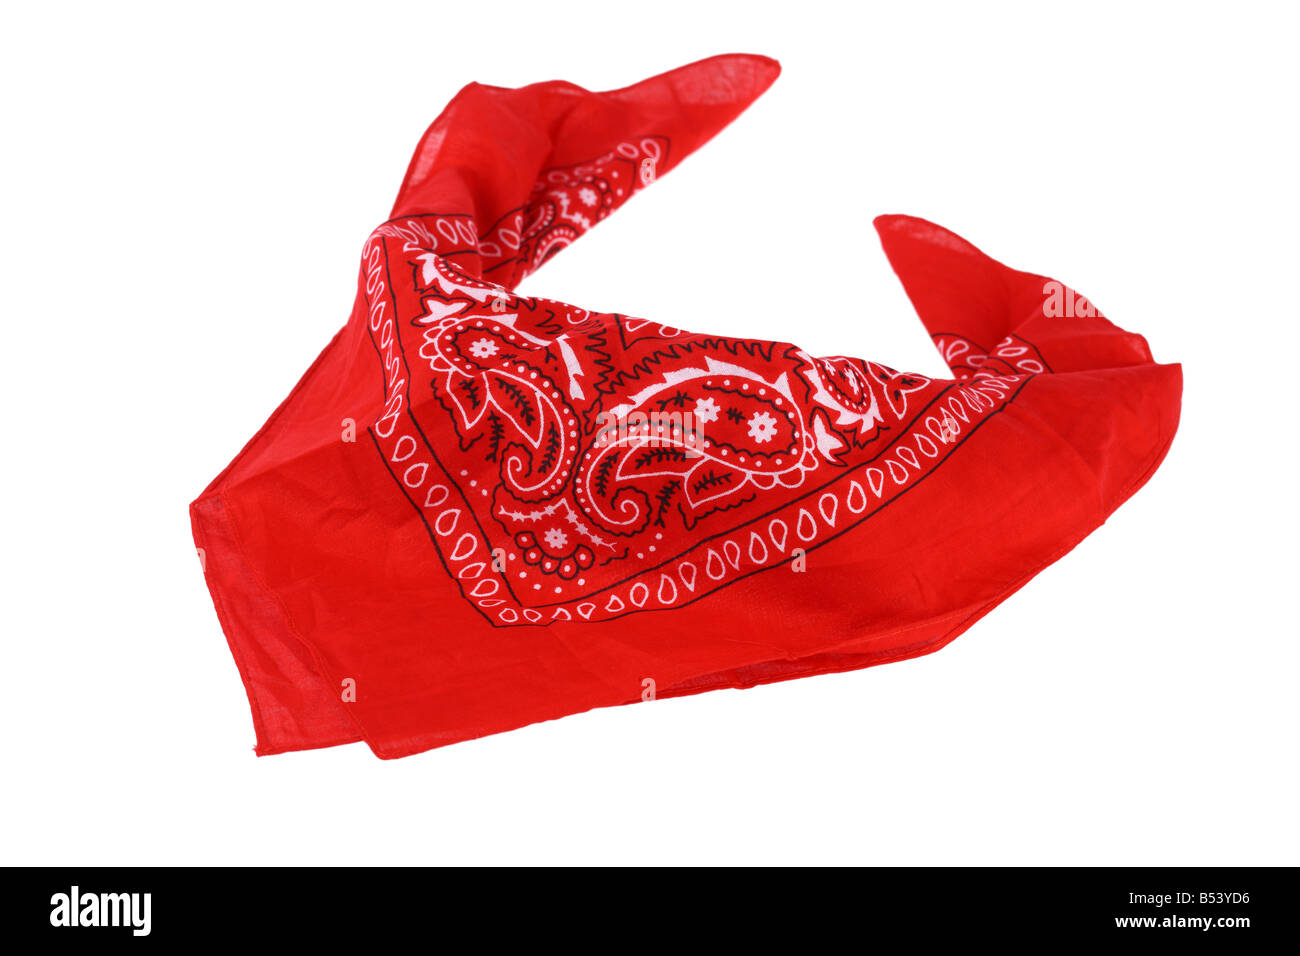 Découpe de mouchoir rouge isolé sur fond blanc Photo Stock - Alamy